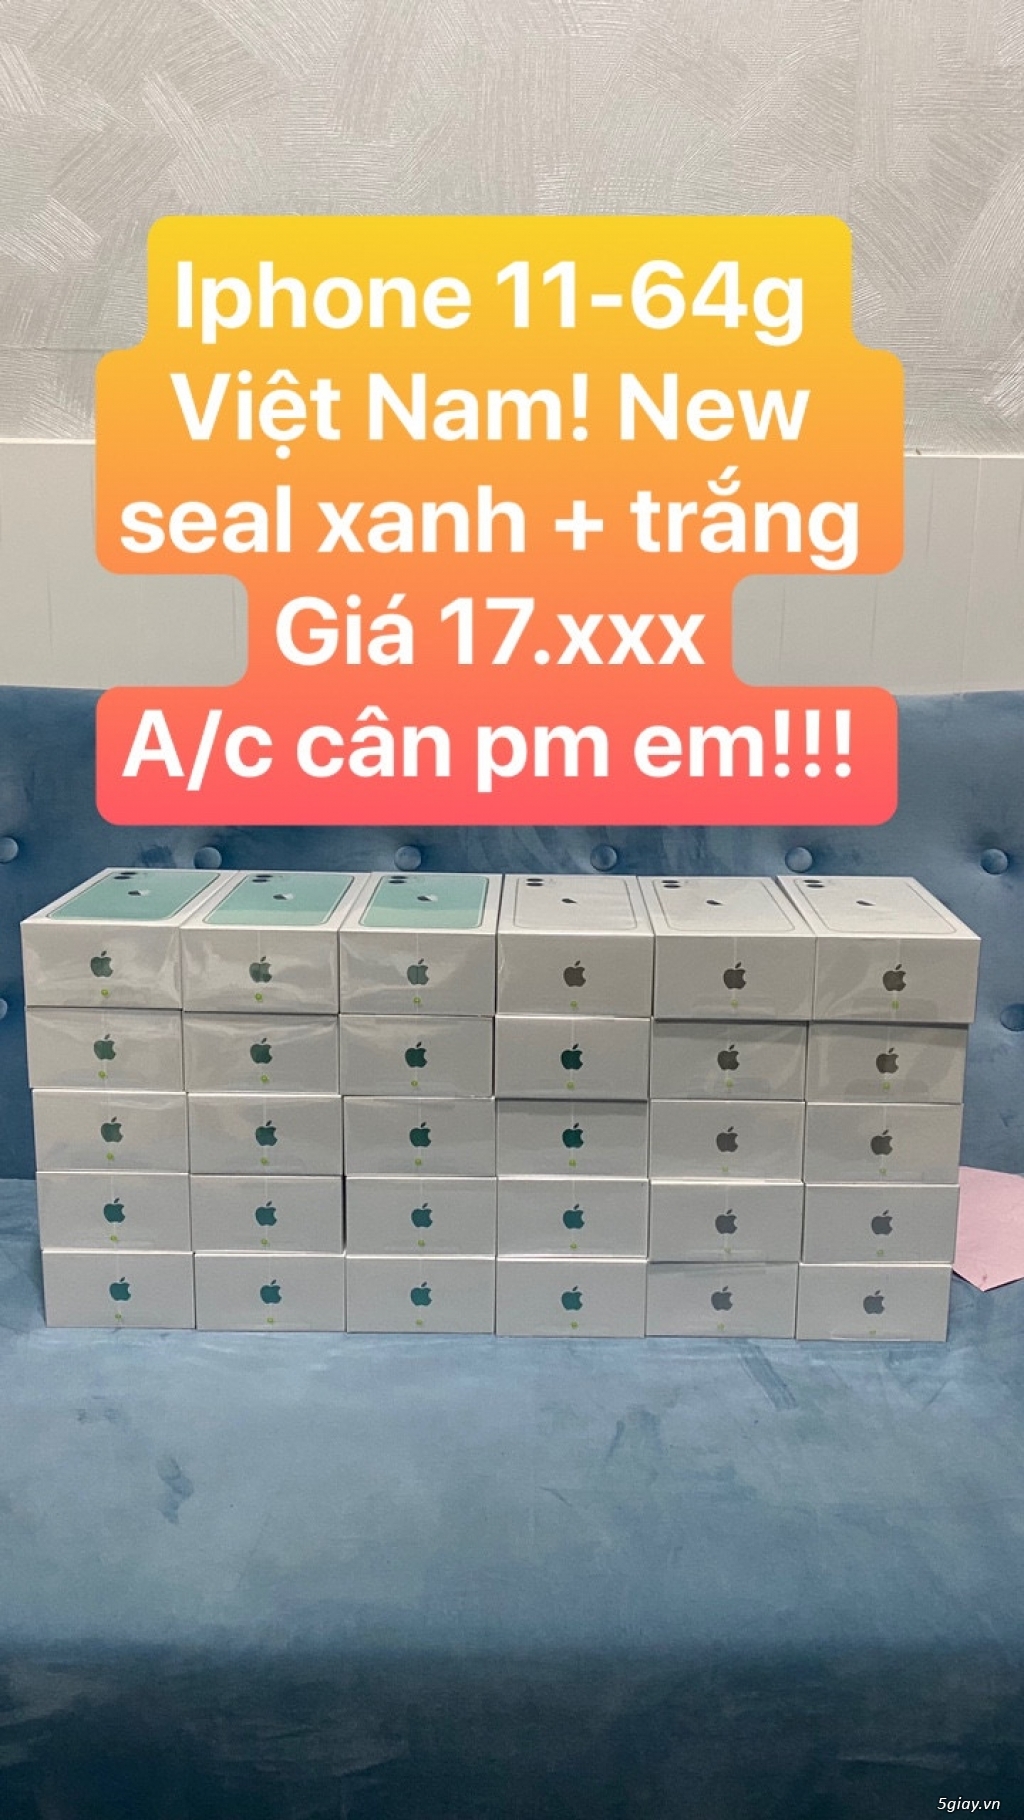 Iphone 11-64g xanh, trắng Việt Nam! New seal giá rẻ